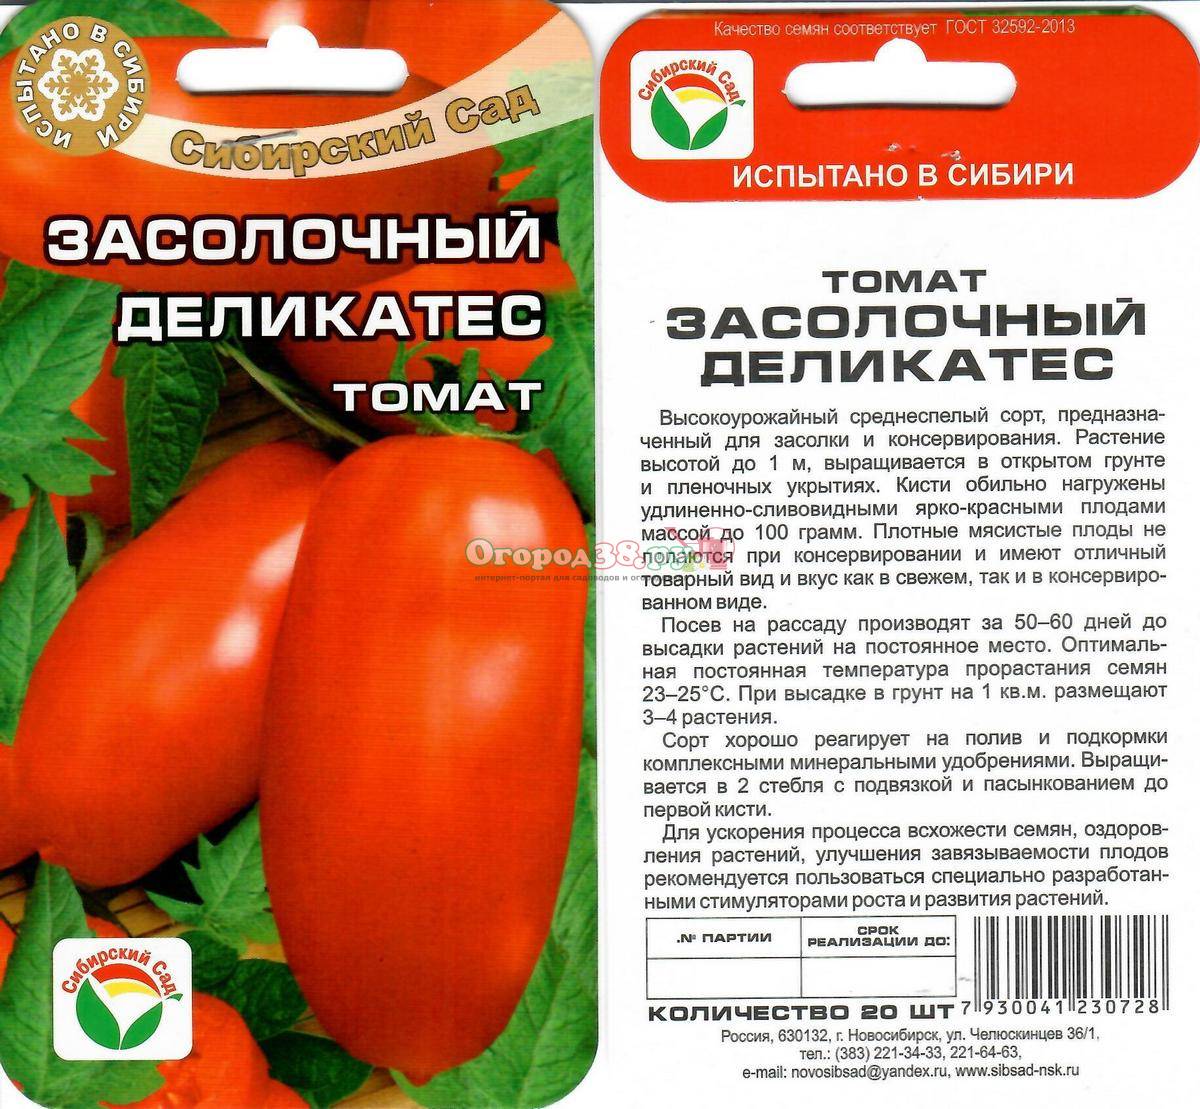 Томат московский деликатес: описание и характеристика сорта, отзывы с фото